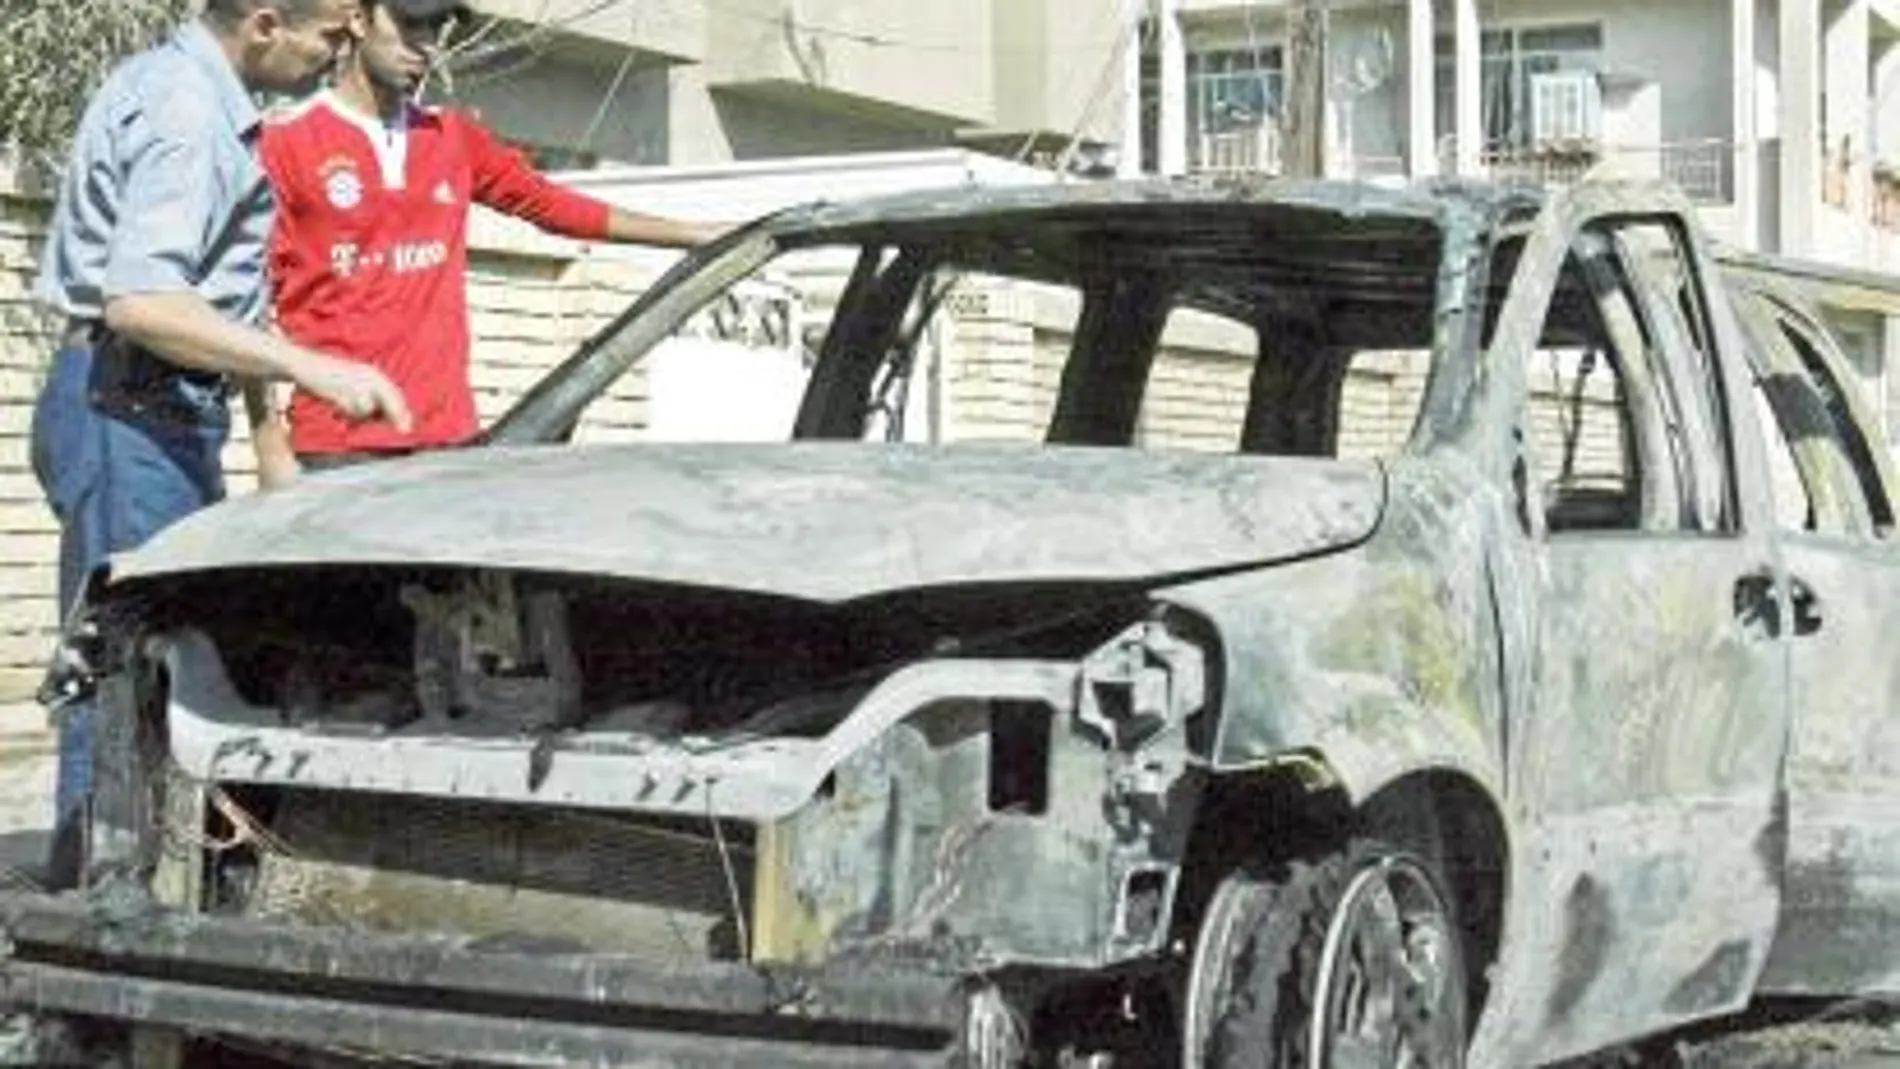 Uno de los atentados se llevó a cabo con un coche bomba, que explotó cerca de los domicilios de varios cristianos en el barrio de Karrada